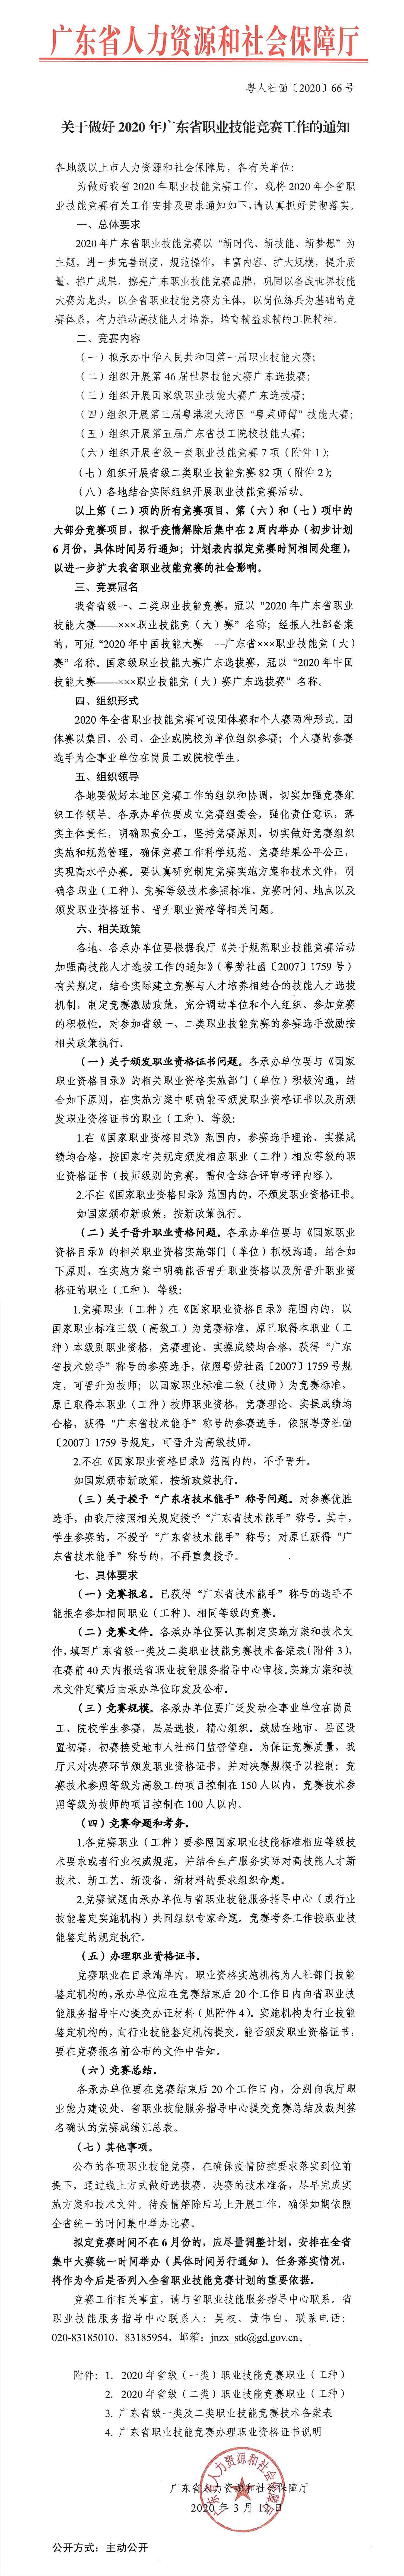 （粤人社函[2020]66号）关于做好2020年广东省职业技能竞赛工作的通知.jpg